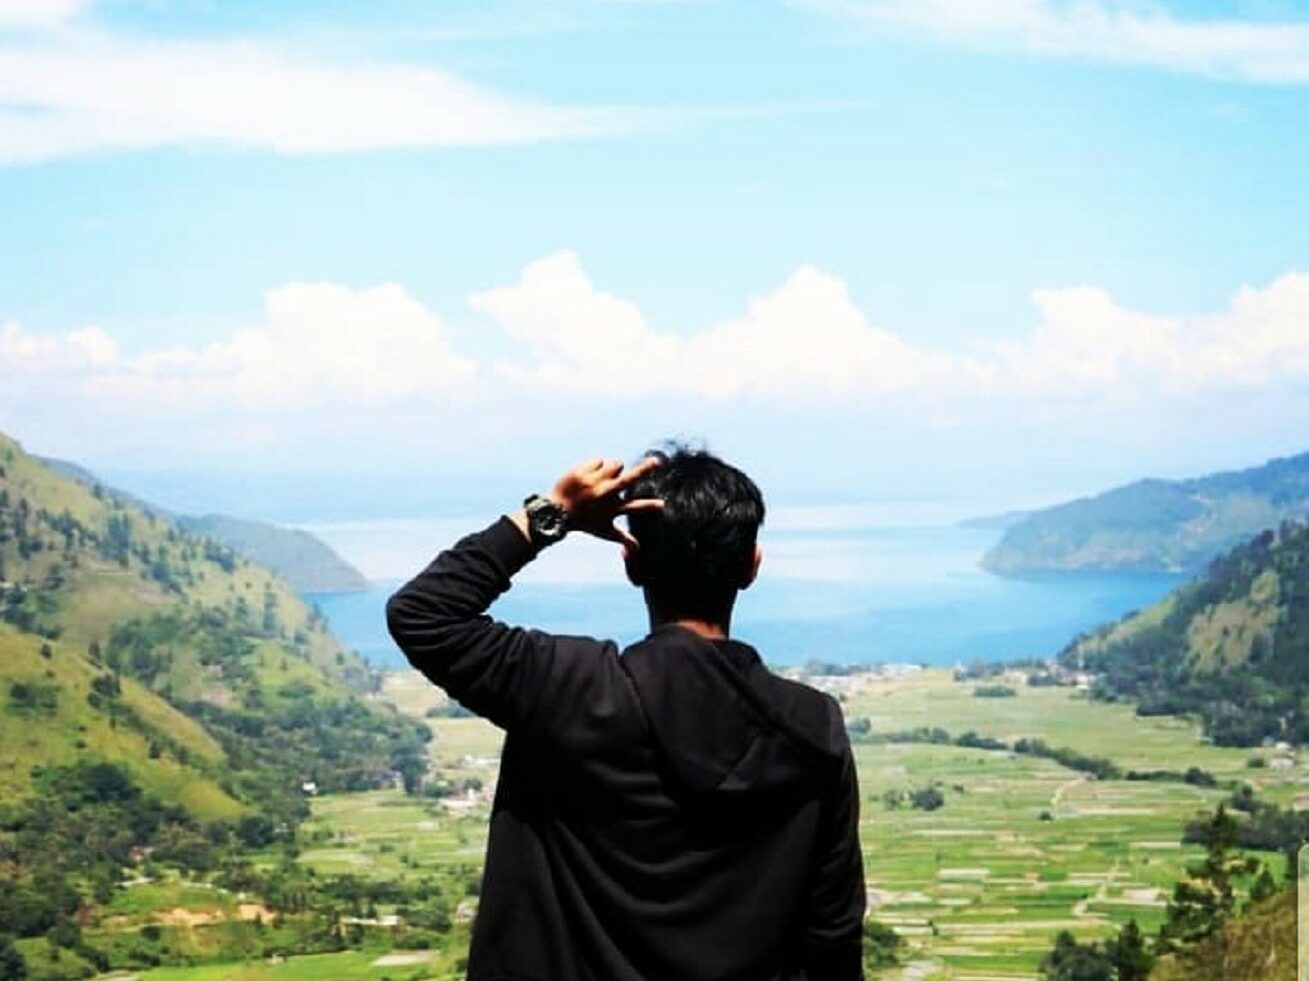 Melepas pandang ke panorama di hadapan Wisata Air Terjun Janji Humbang Hasandutan Sumatera Utara - ilhamaulia_koto